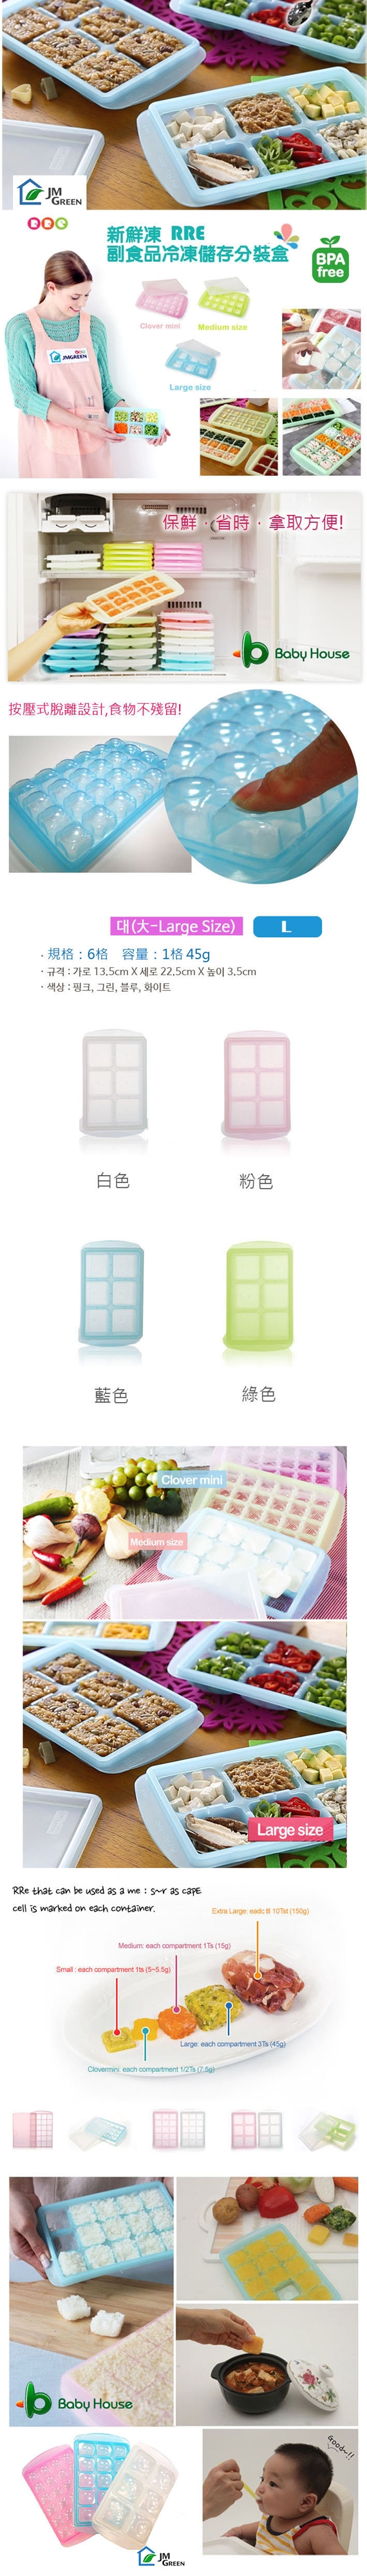 愛兒房-JMGreen新鮮凍RRE副食品冷凍儲存分裝盒1入(冷凍盒冰磚盒)L-大(B68-035)